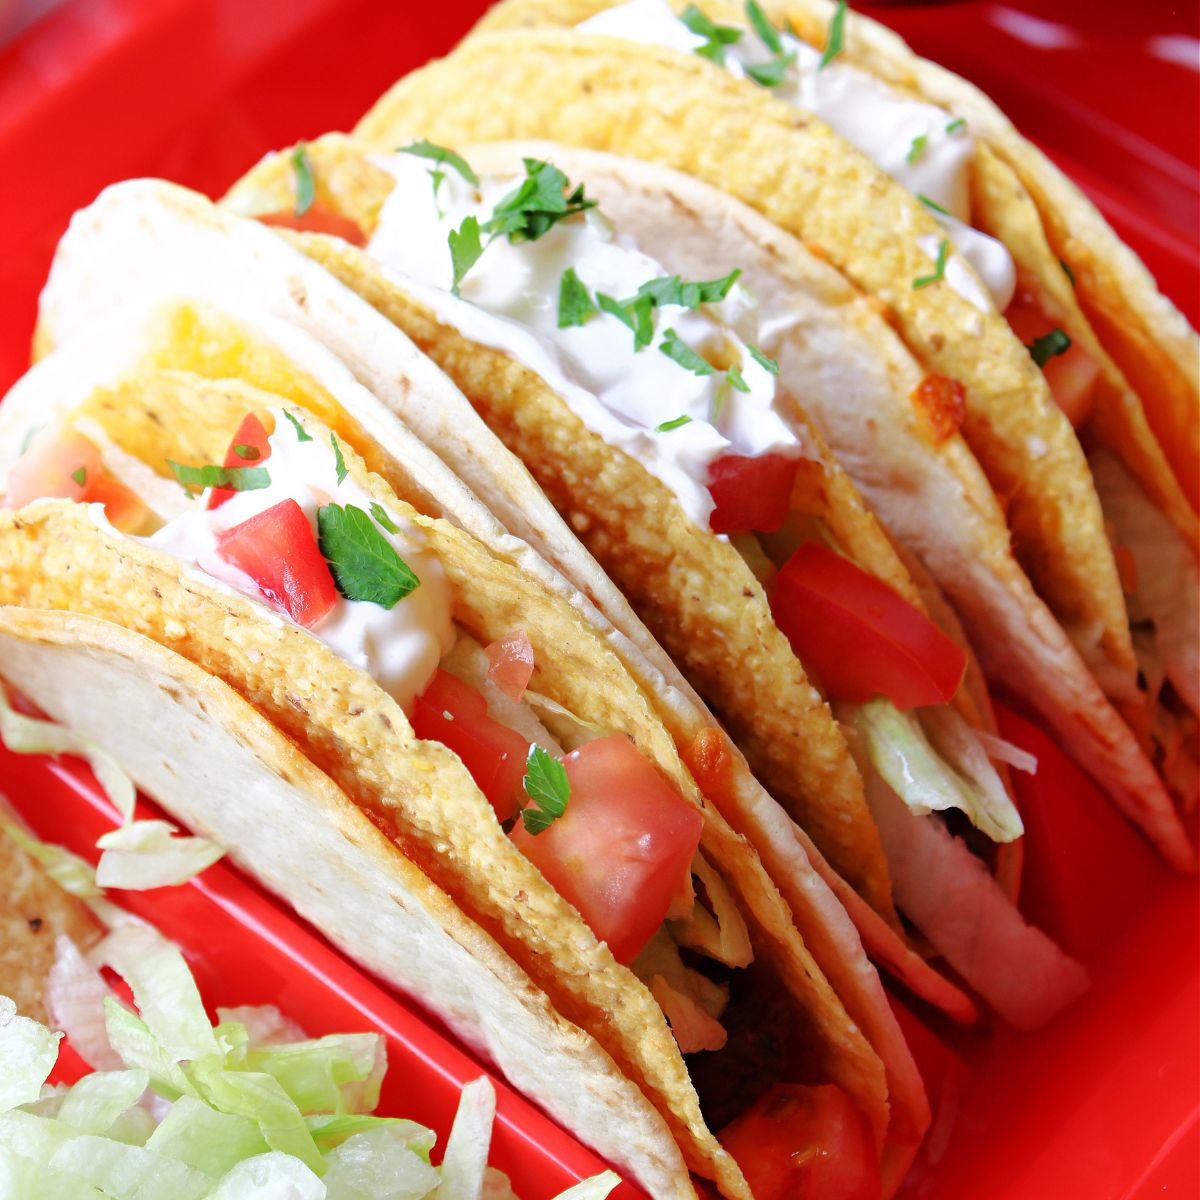 Three Cheesy Gordita Crunch tacos on a red tray.